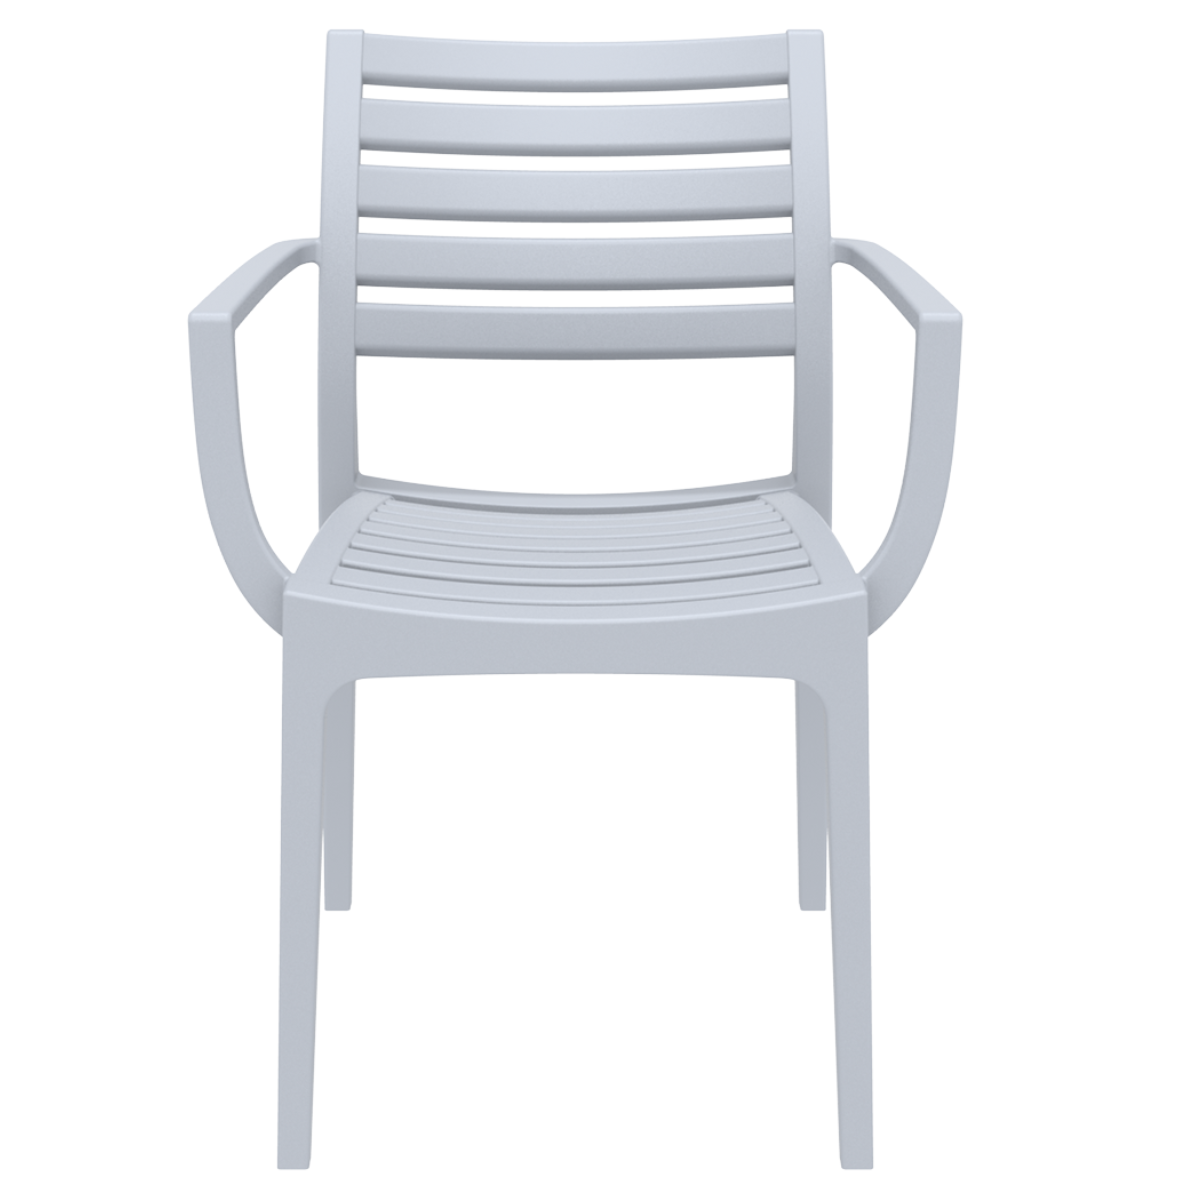 ST ARTEMIS Ezüst design Műanyag kültéri szék